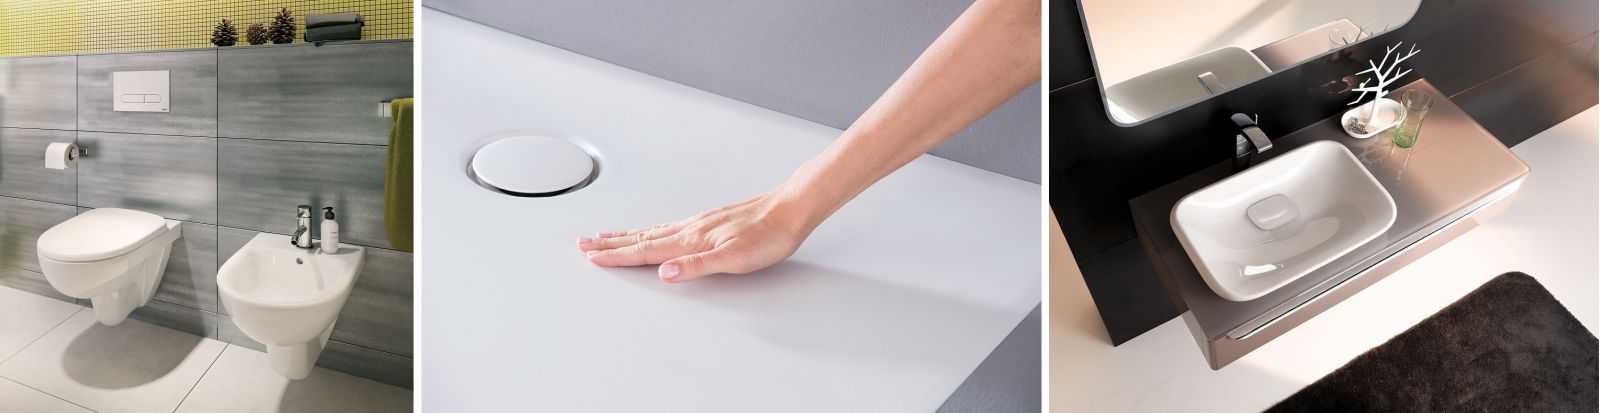 Gładkie powierzchnie łazienkowych sprzętów łatwo długotrwale utrzymać w czystości (fot. GEBERIT)